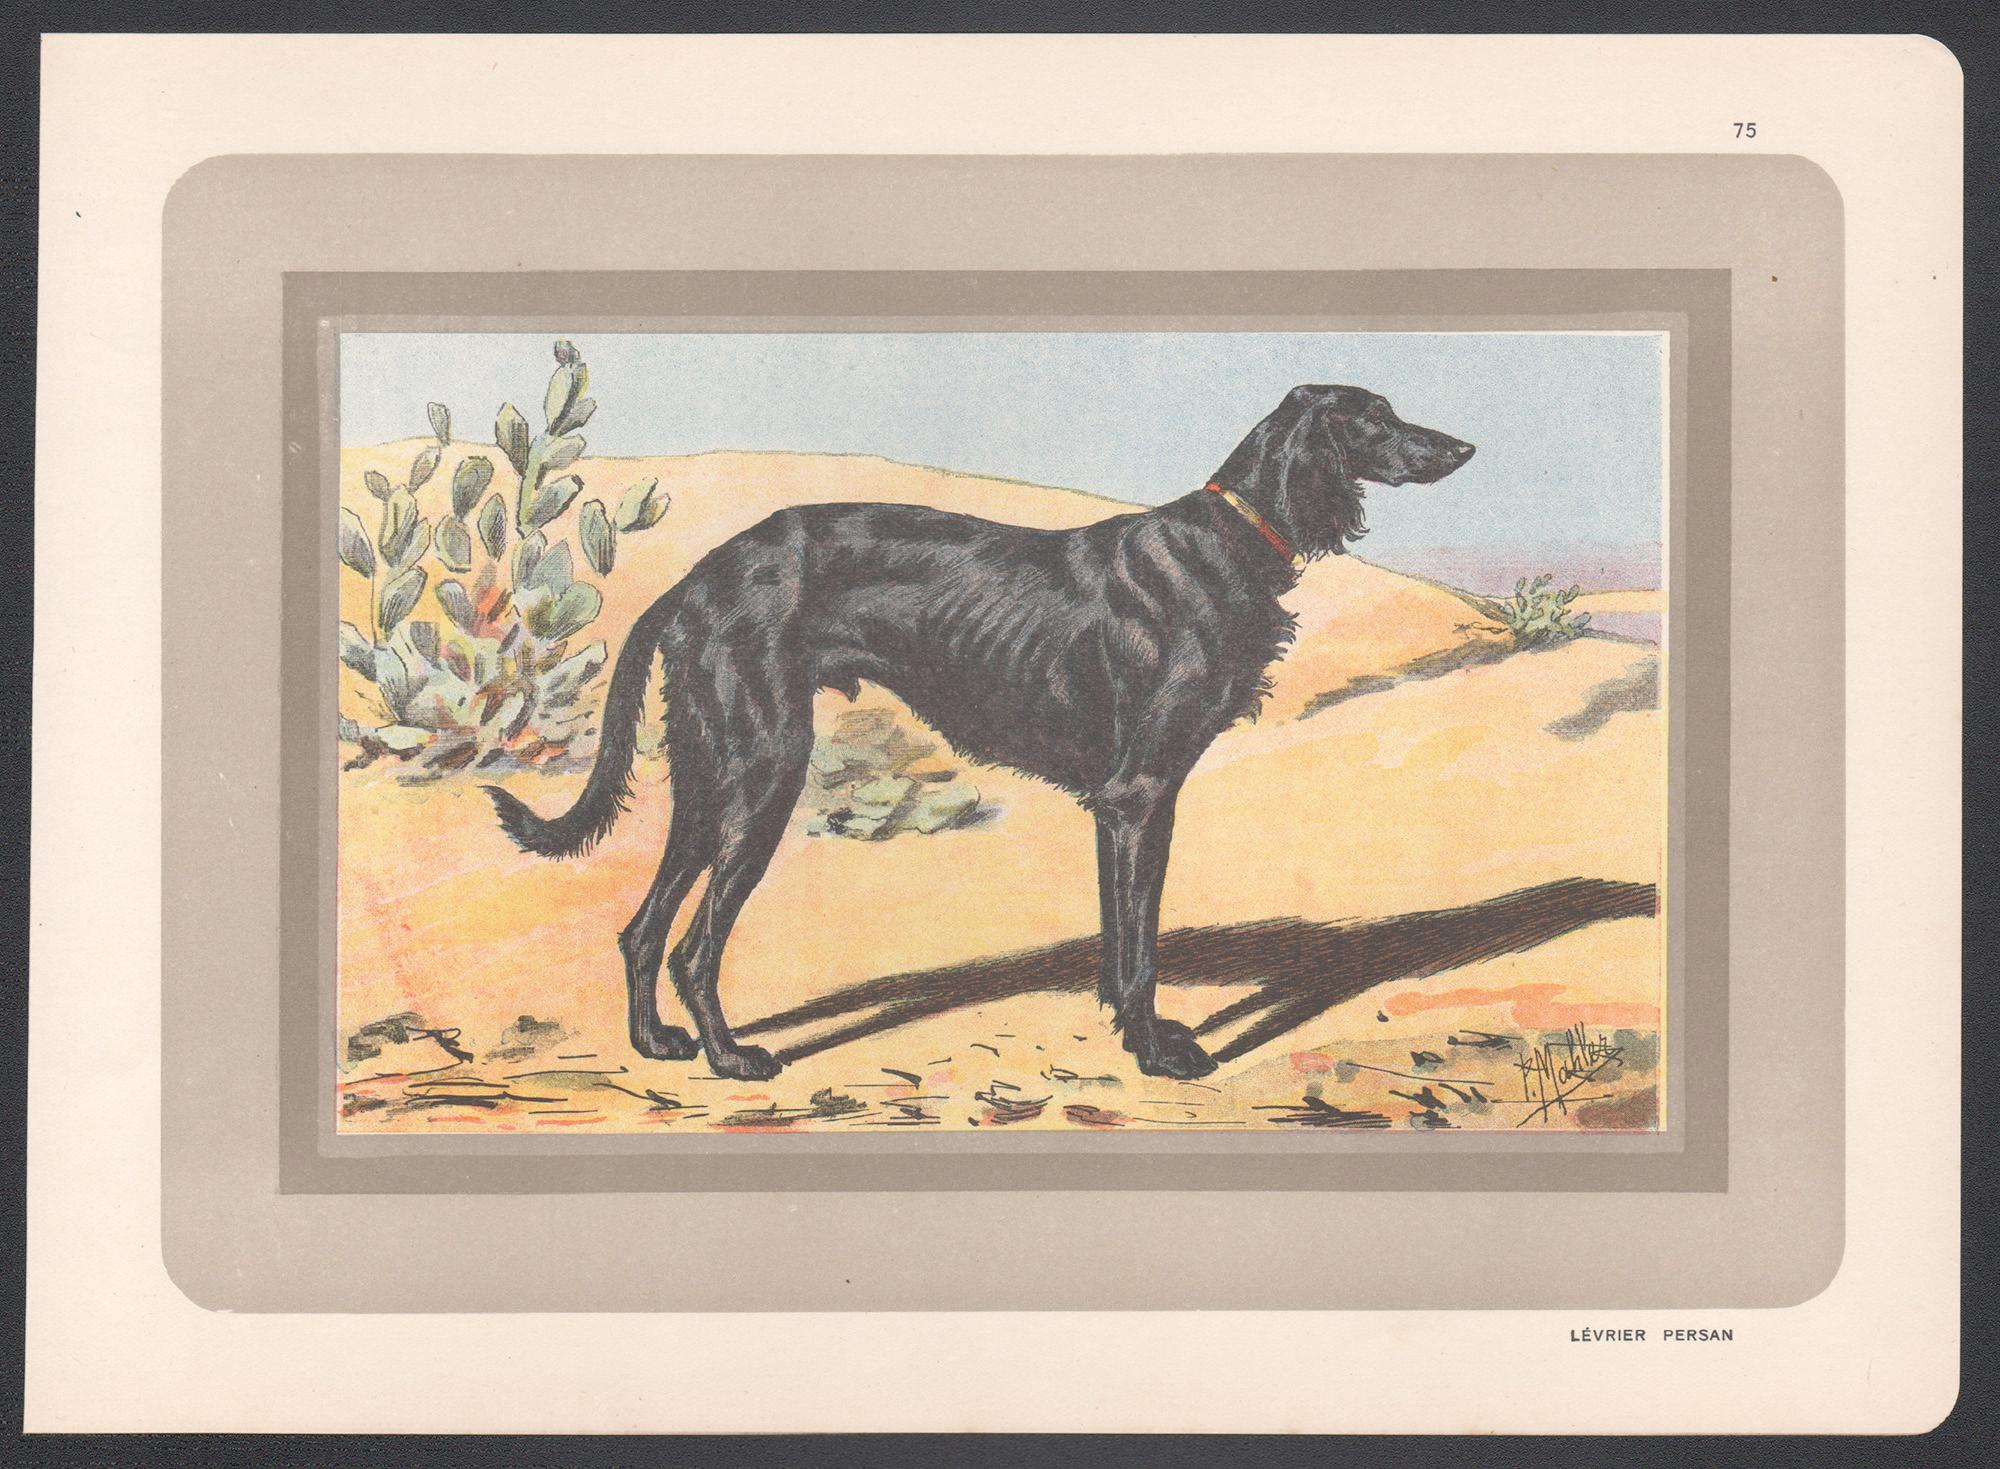 Impression chromolithographie d'un lévrier persan, chien de chasse français, 1931 - Print de P. Mahler